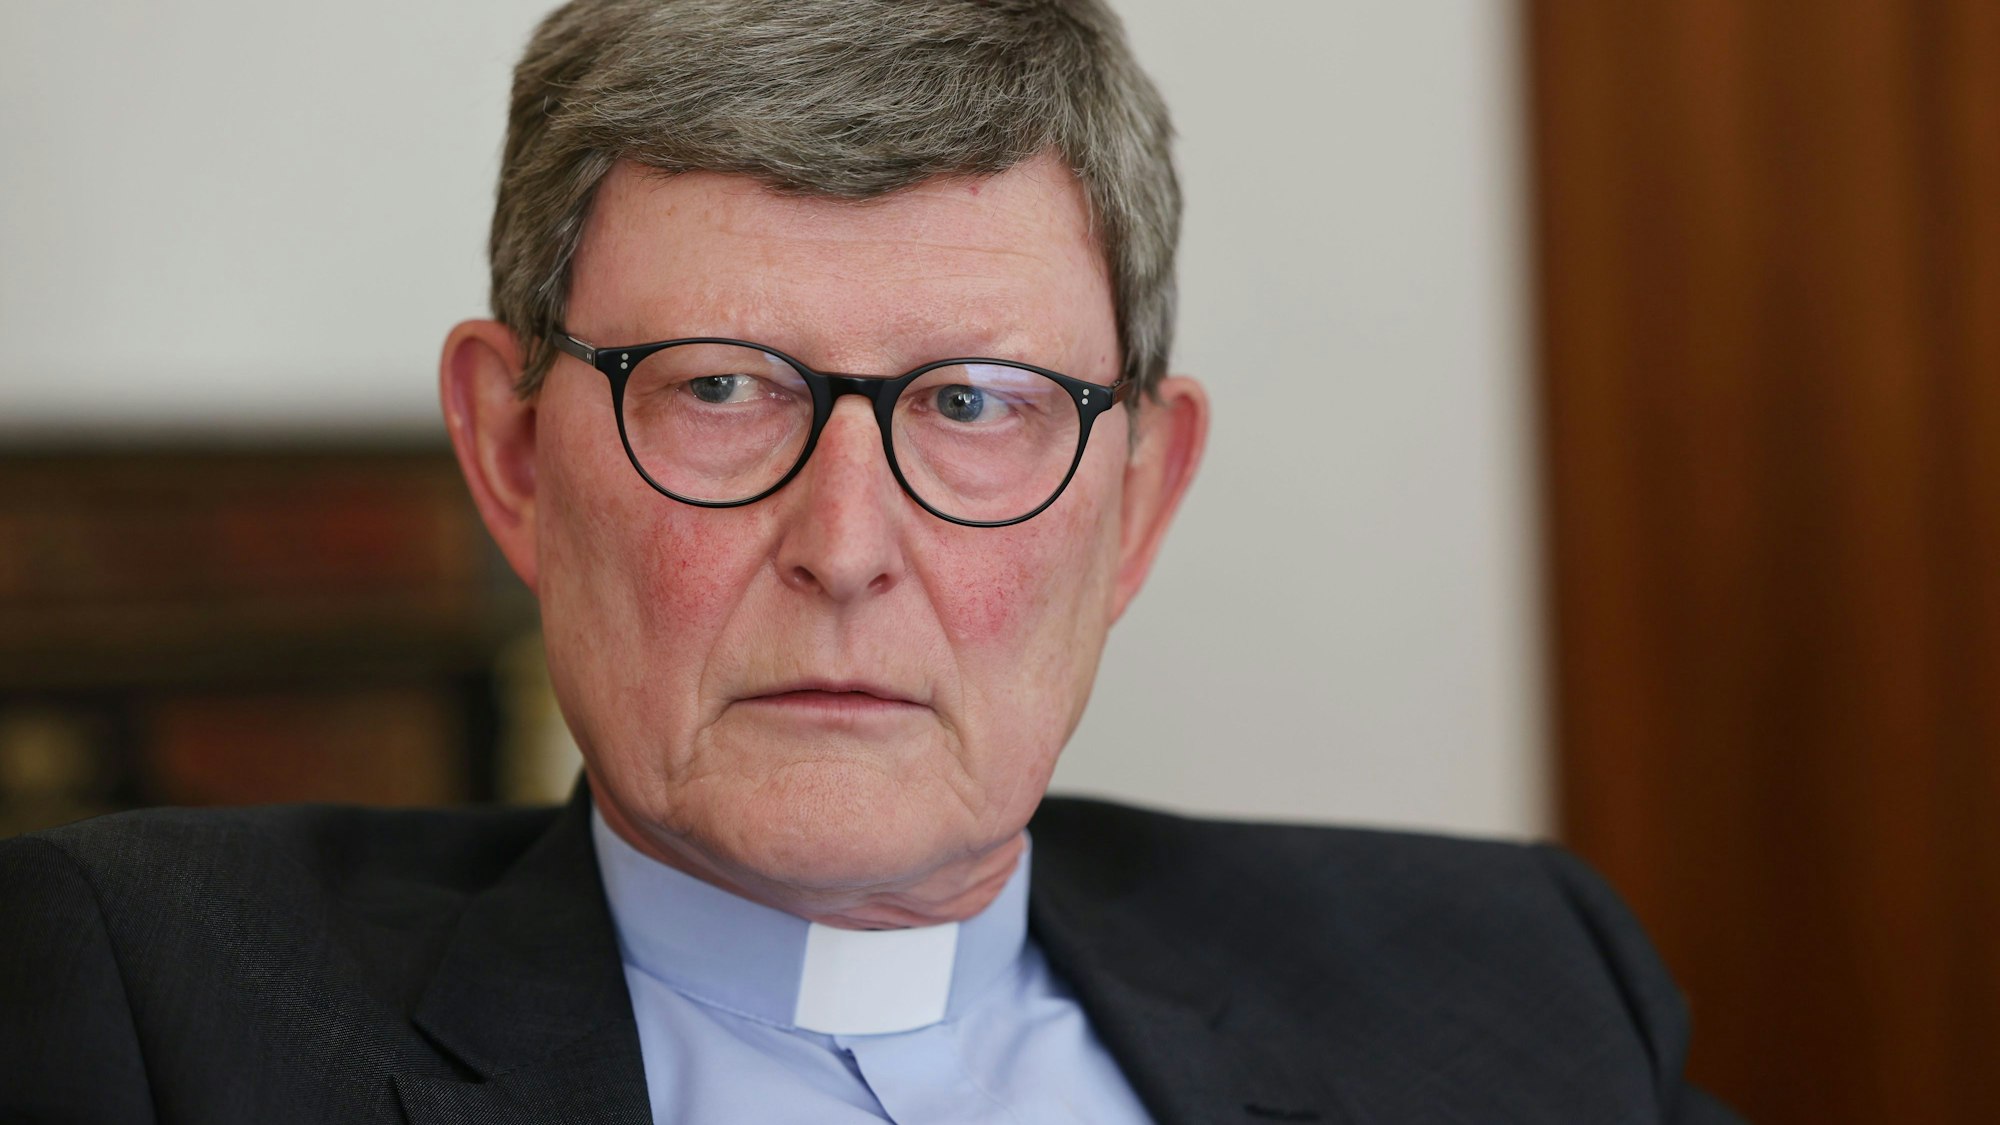 Kardinal Rainer Maria Woelki, Erzbischof von Köln, gibt im Erzbischöflichen Haus ein Interview.